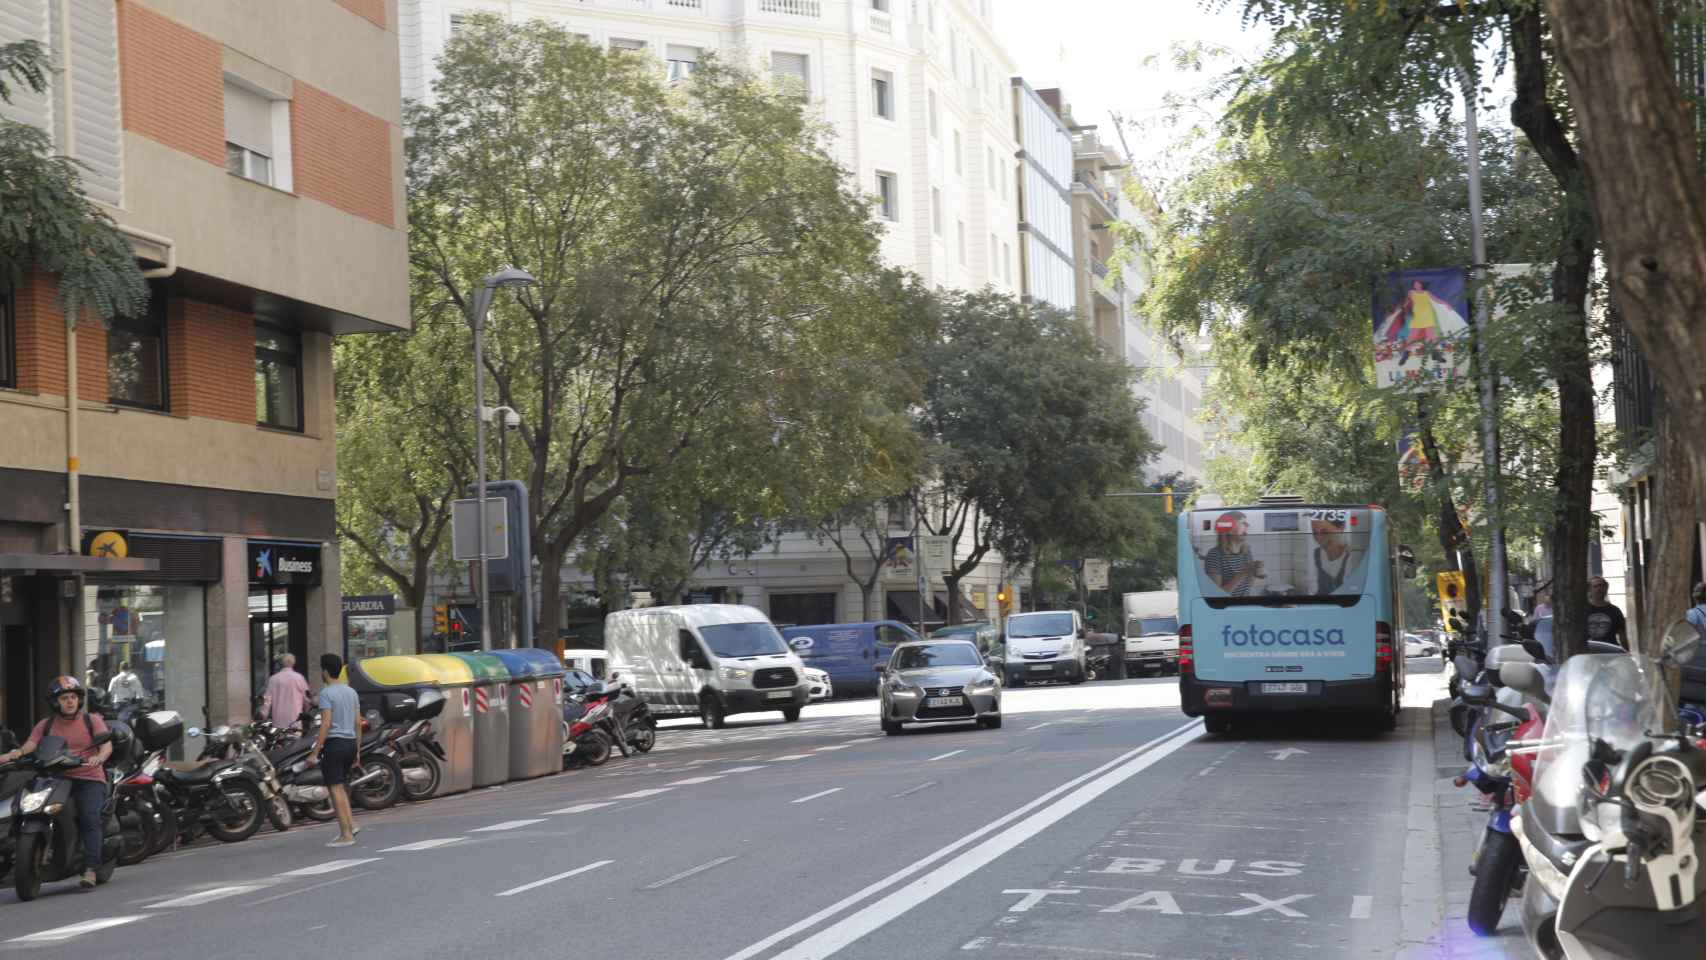 Empiezan las obras para añadir un nuevo carril bus en Aragó / JORDI ROMERO